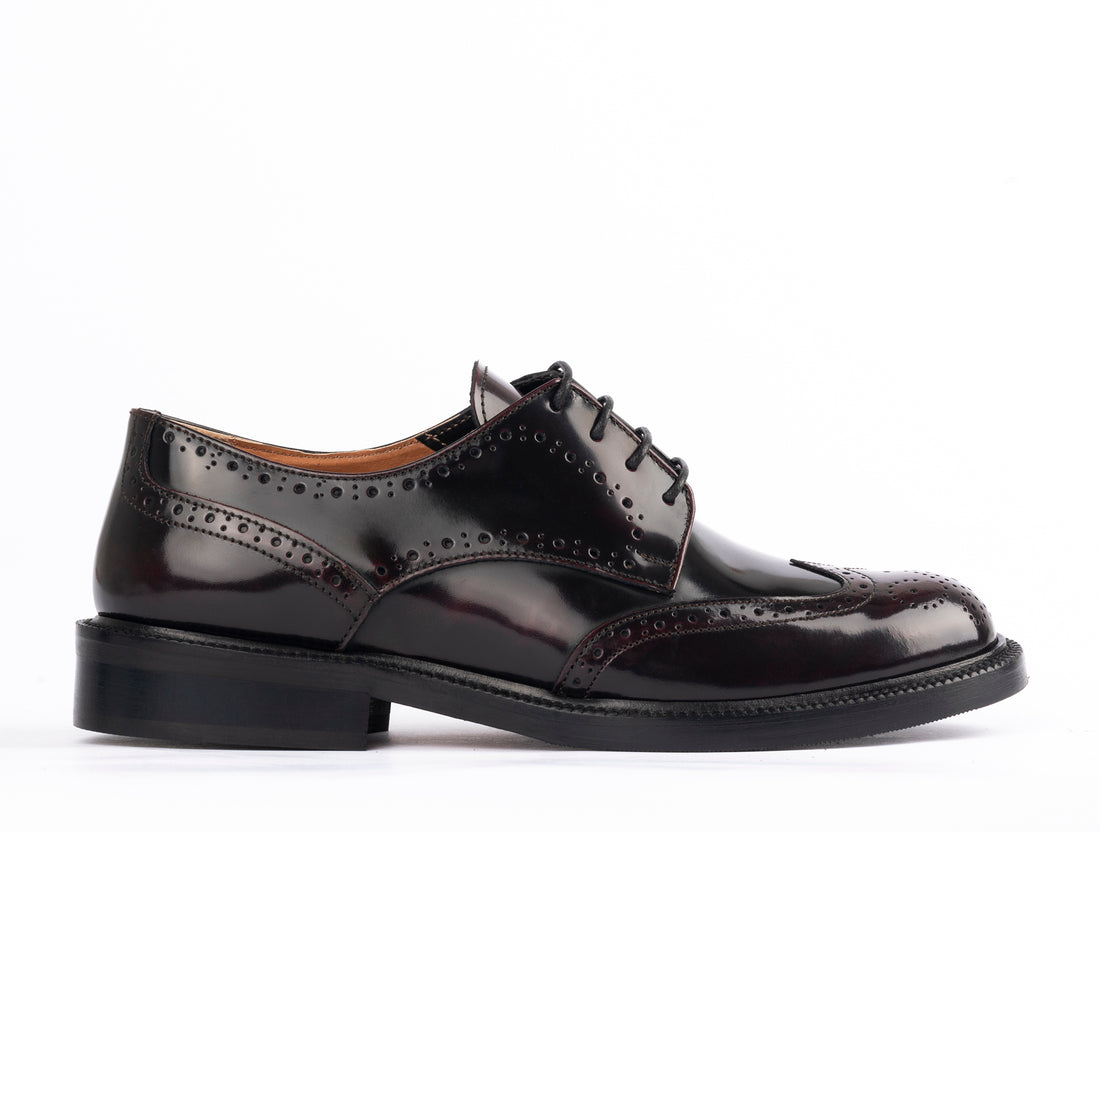 Bordeaux leather Oxford shoes